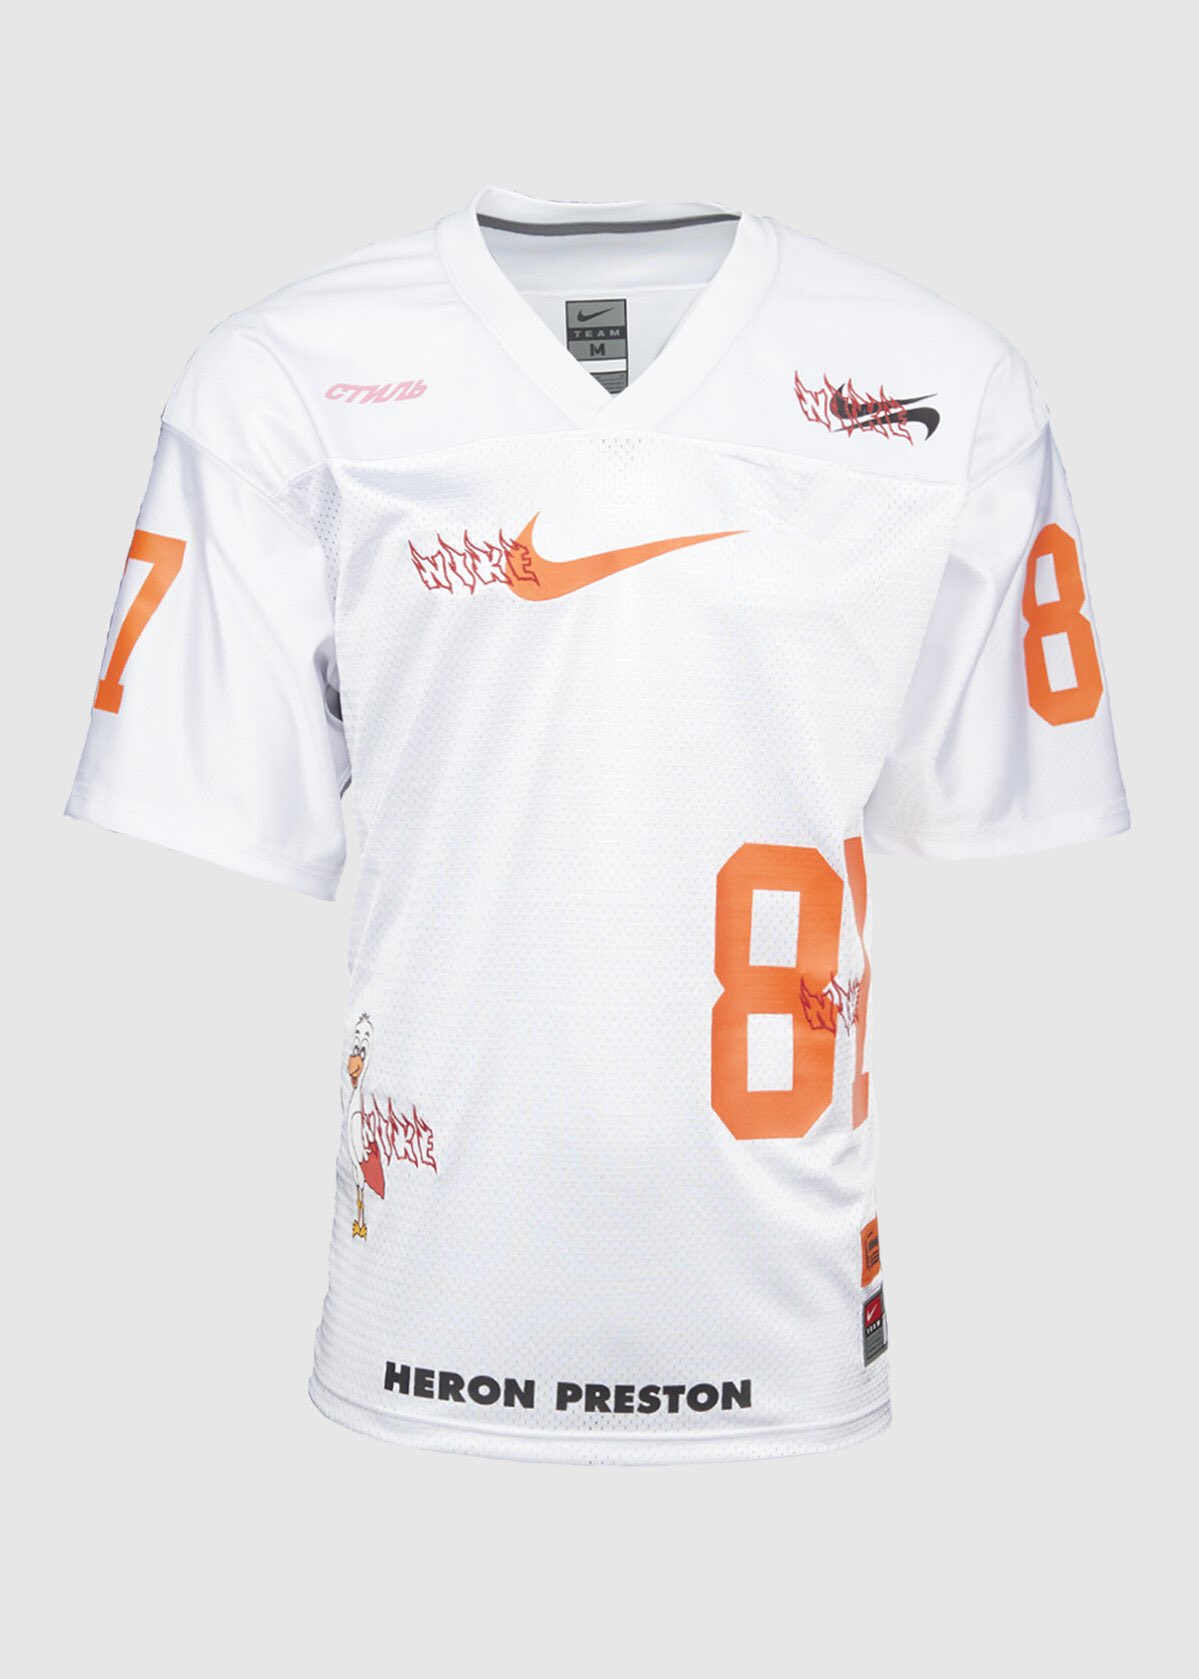 SNKR_TWITR on Twitter: "Heron Preston x Nike Jersey https://t.co/pGo7jGqjji  https://t.co/2E9TqwprQa" / Twitter